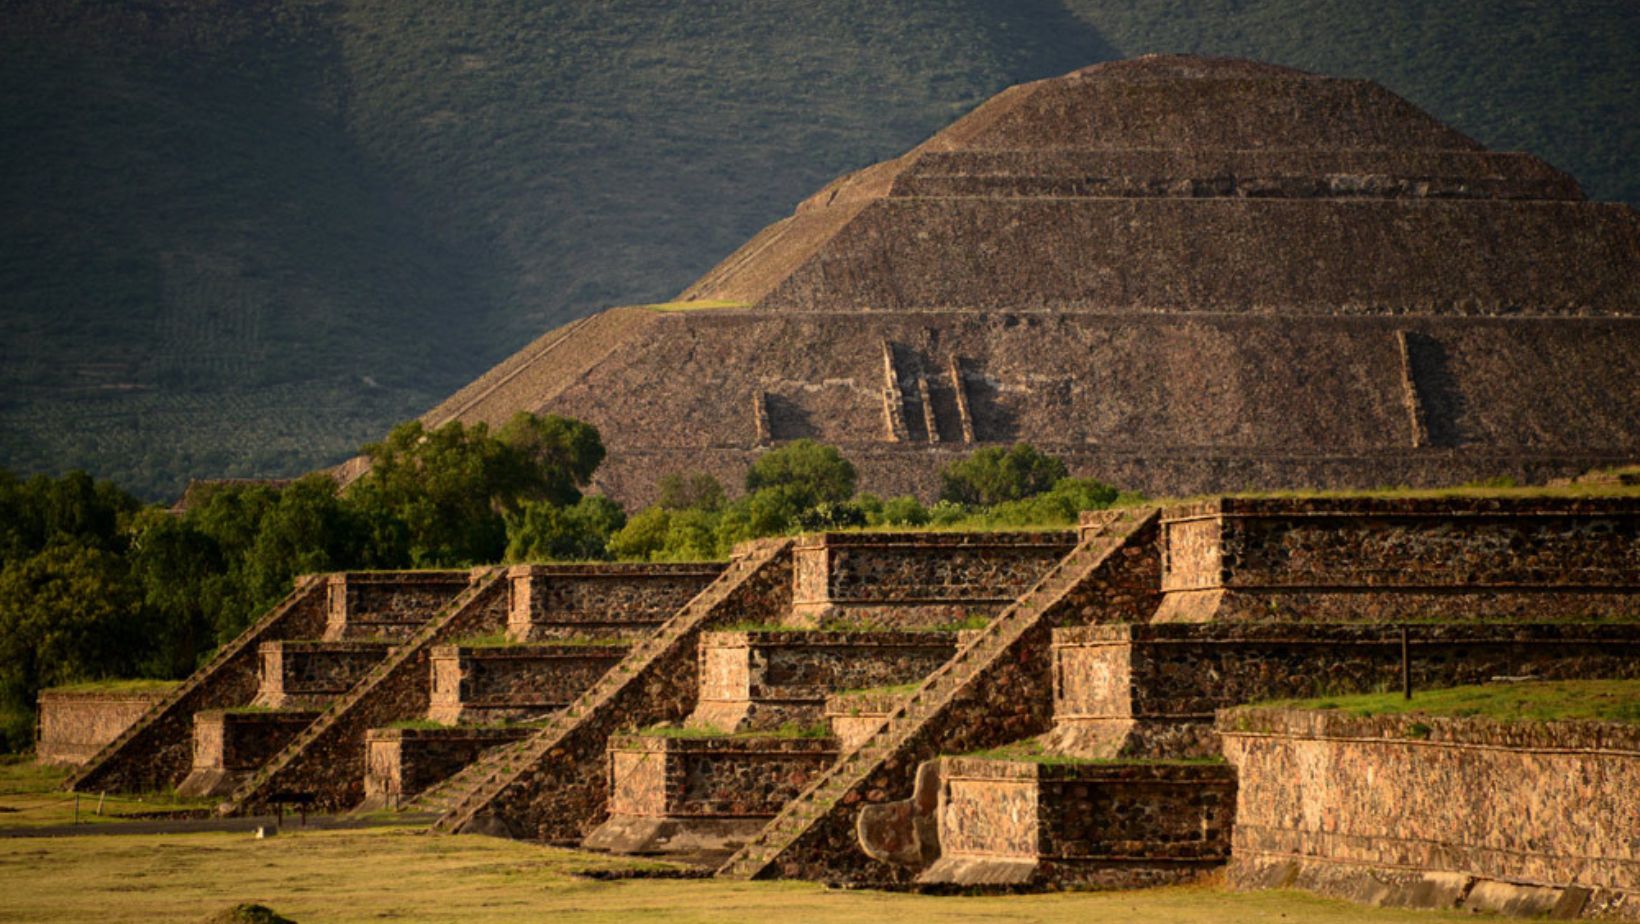 Equinoccio de primavera 2023 visitantes no podrán subir a las pirámides